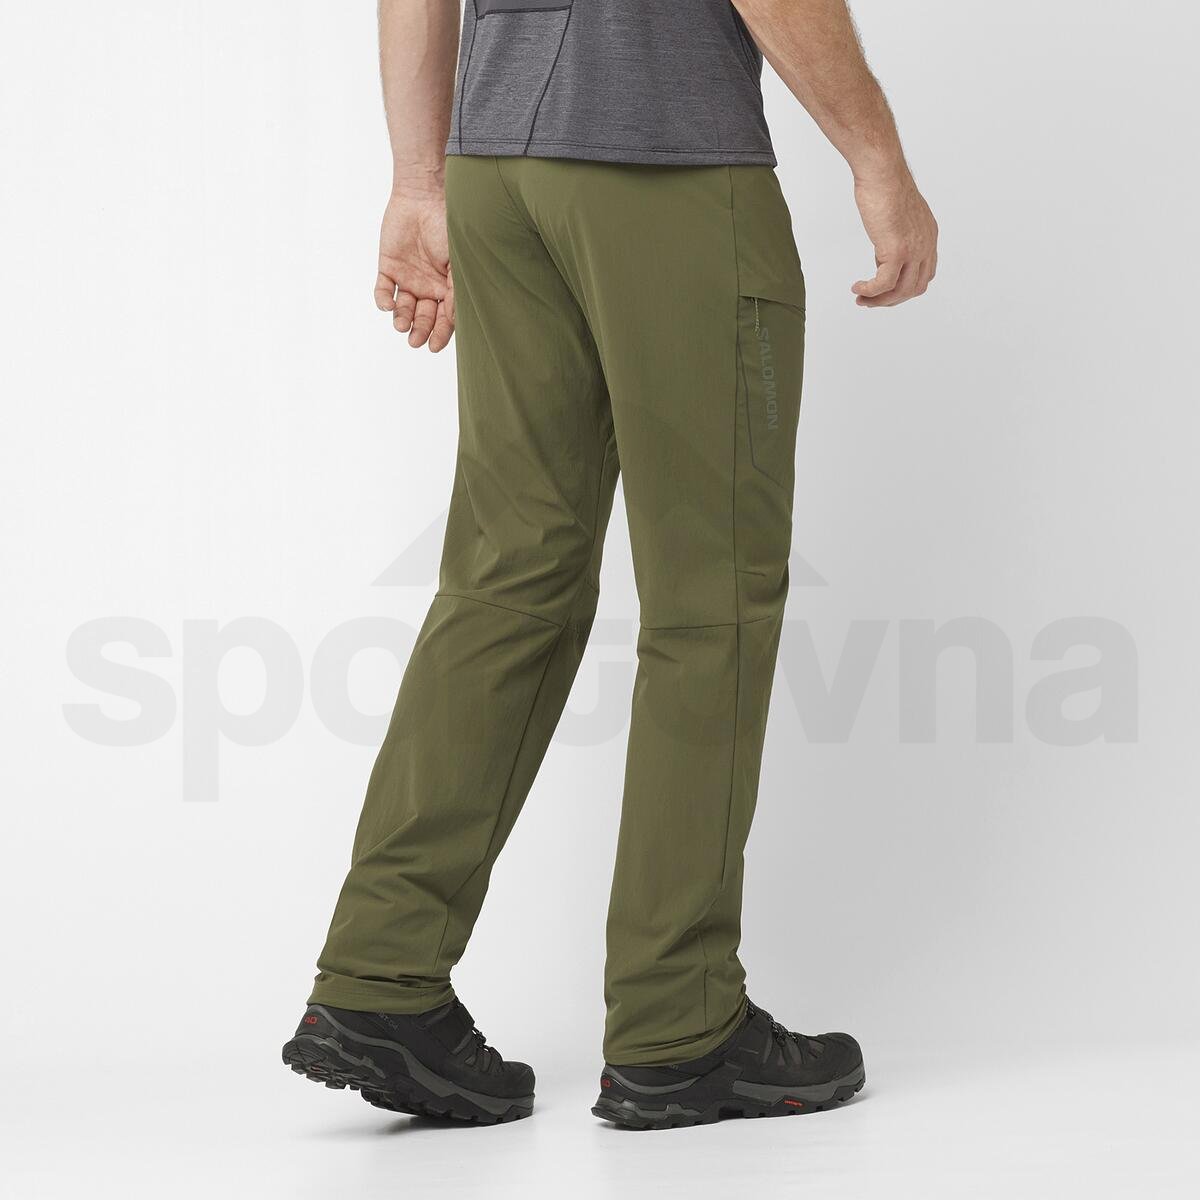 Kalhoty Salomon Wayfarer Pants M - zelená (standardní délka)